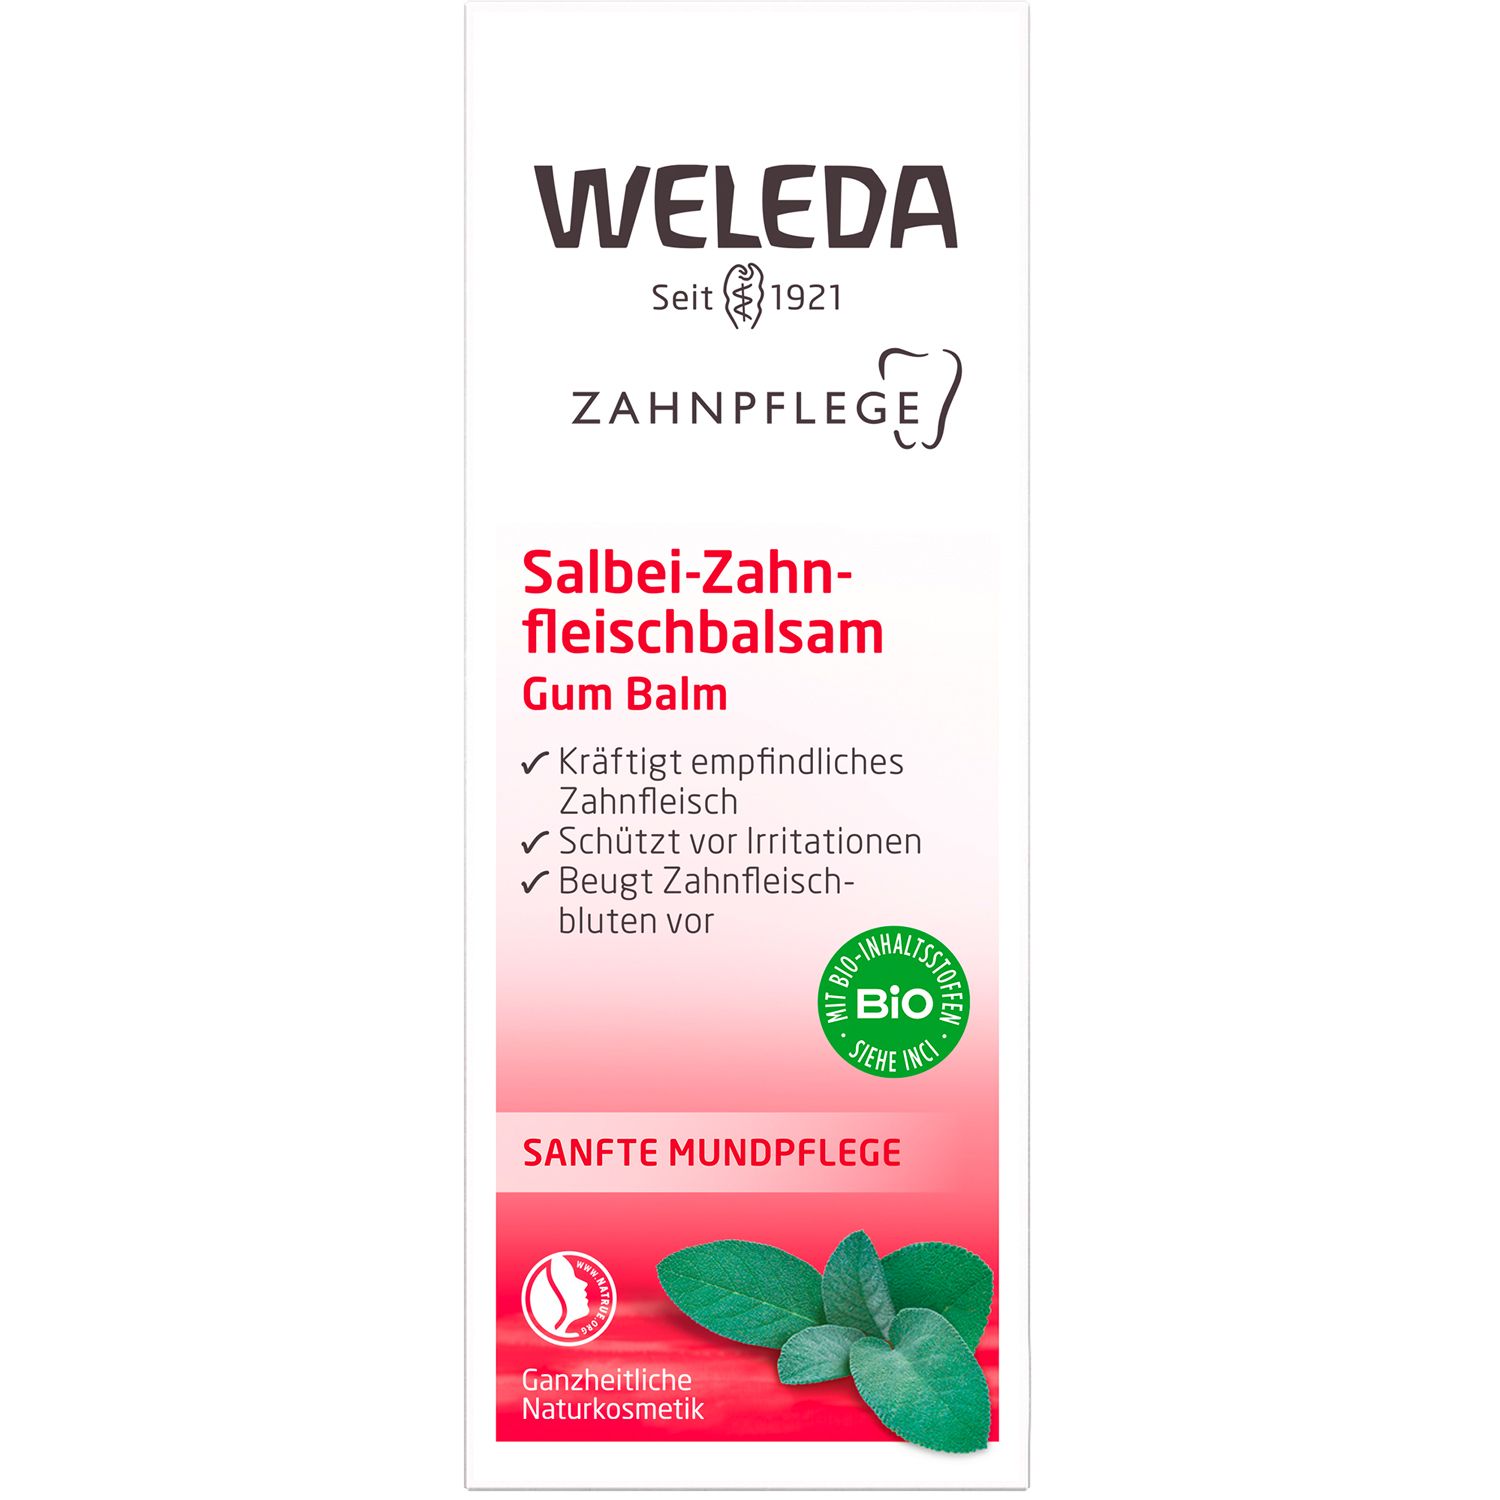 Weleda Salbei-Zahnfleischbalsam - Kräftigt empfindliches Zahnfleisch, schützt vor Irritationen